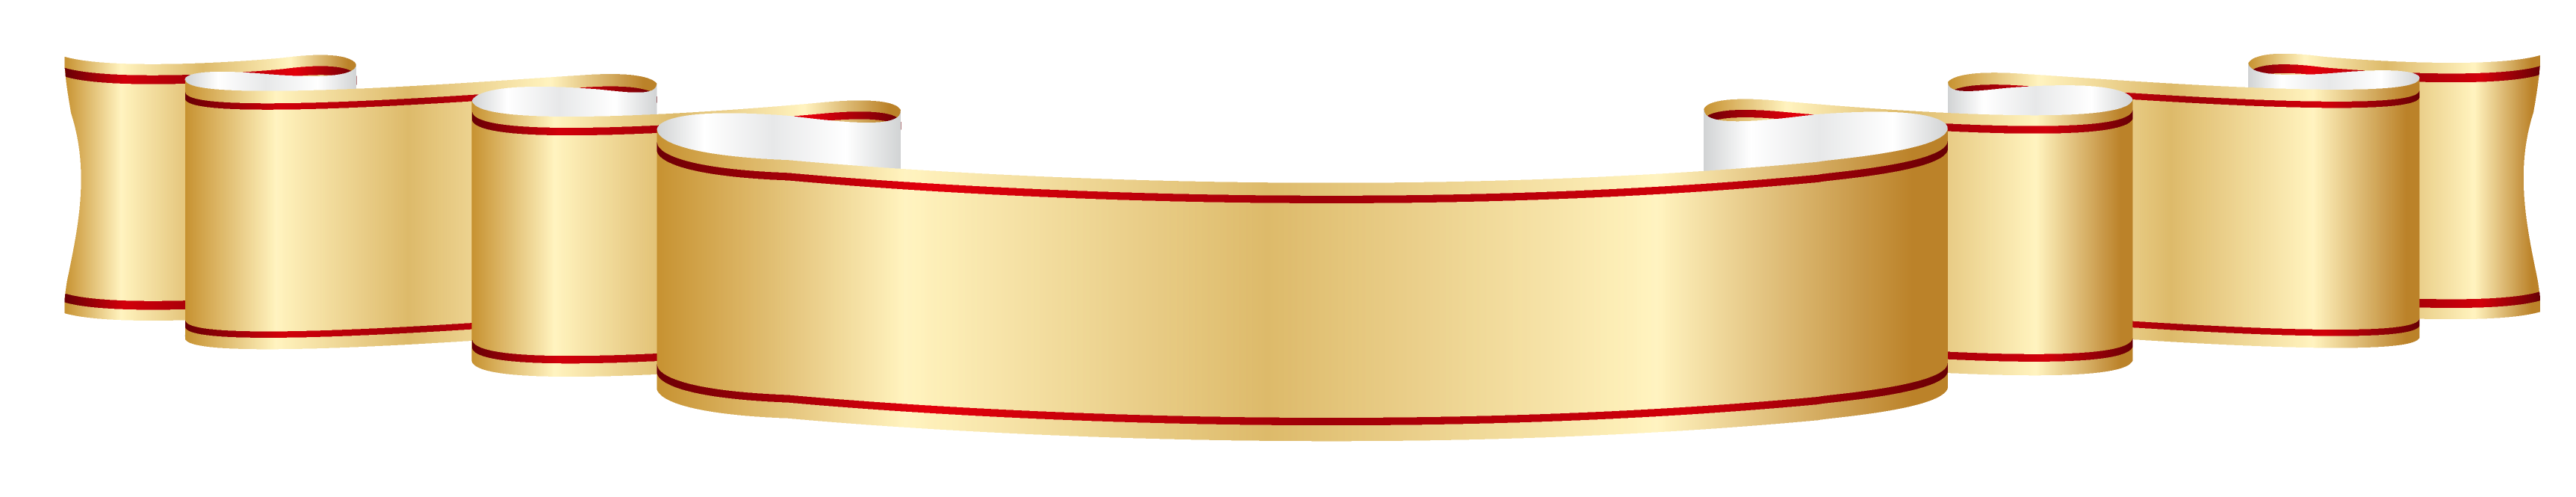 Золотая лента PNG изображение с прозрачным фоном